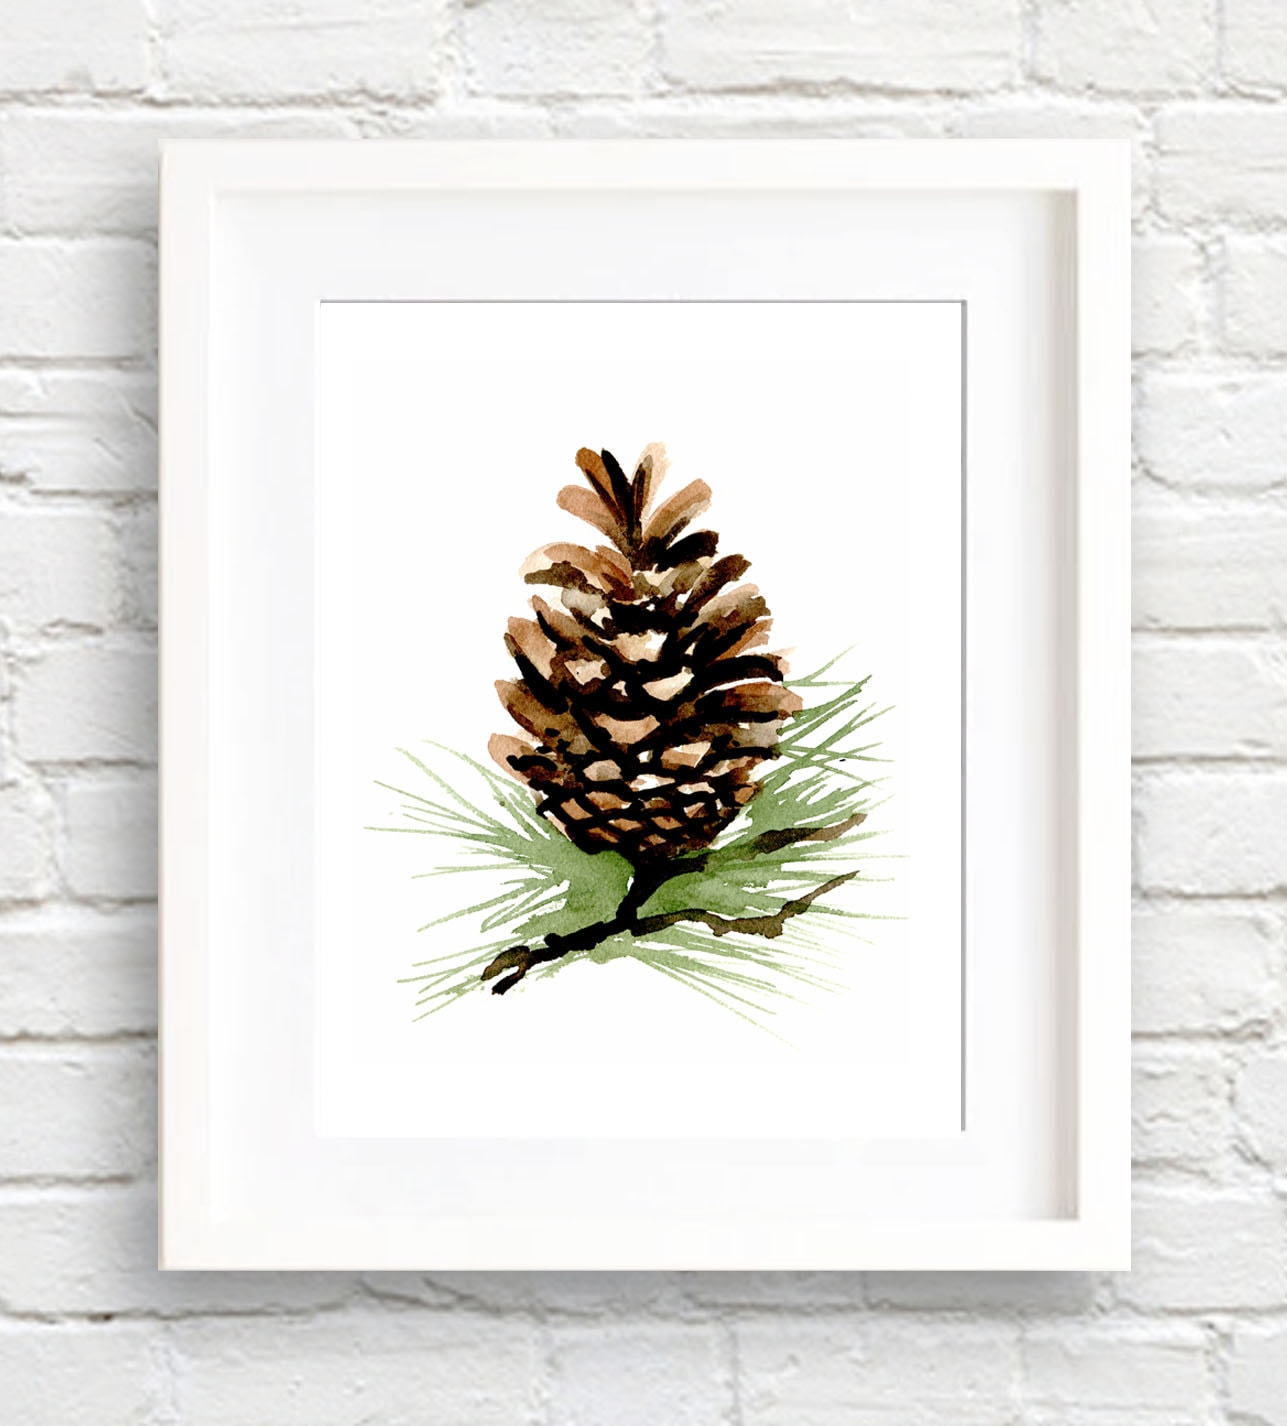 Begin Home Decor 2080-1212-MI100 12 x 12 in. Three Small Pine Cones-Print on Canvas